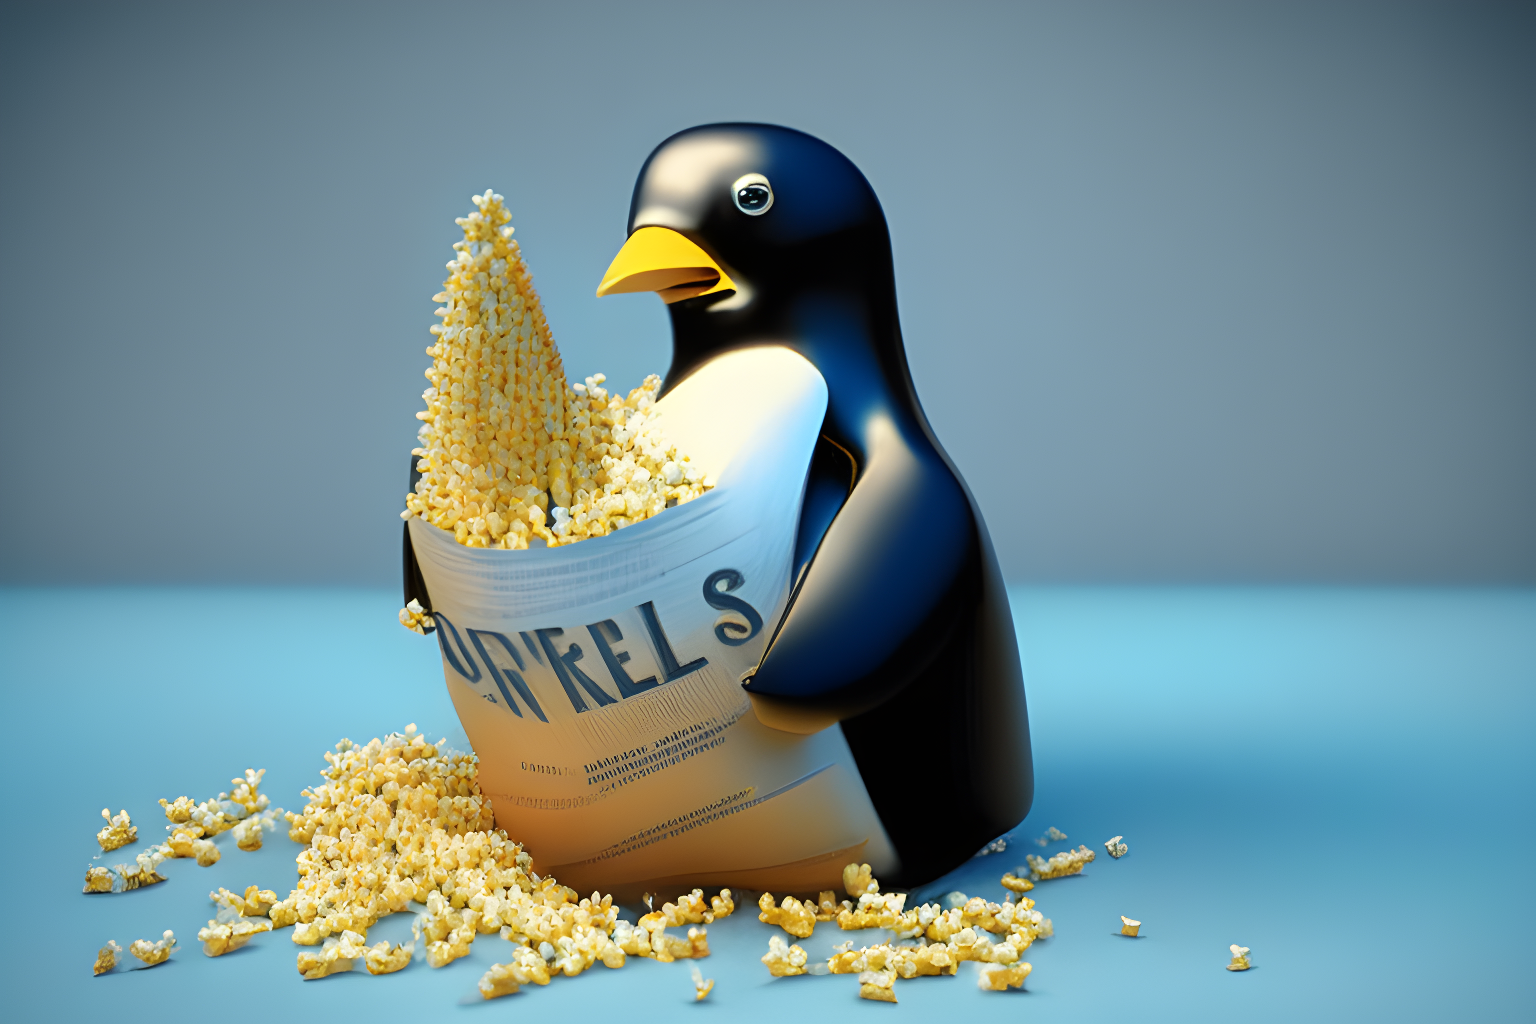 Linux kernel holding kernels